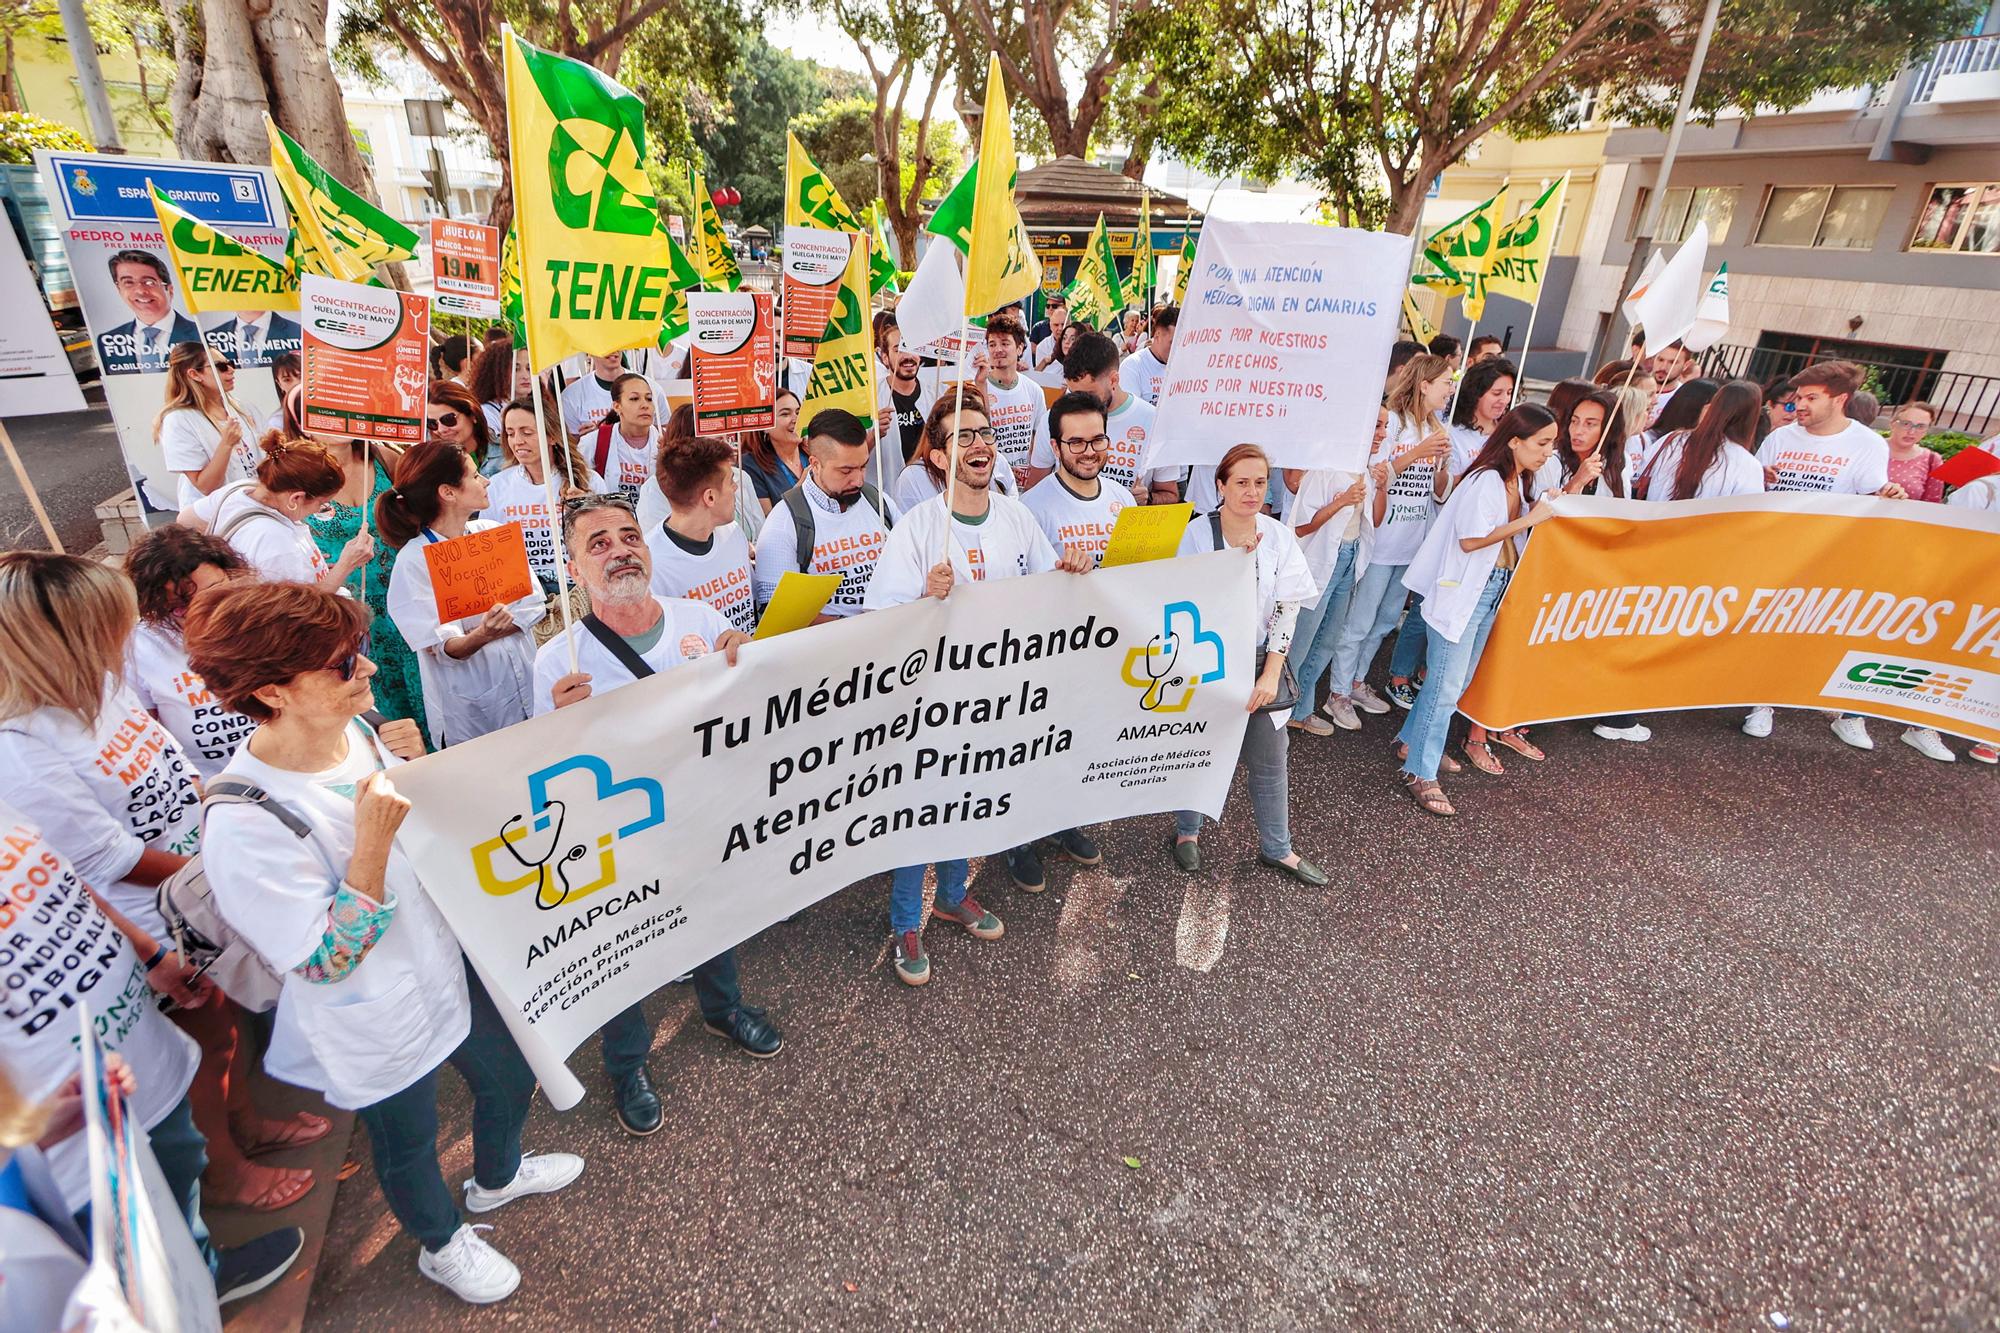 Primera jornada de huelga de médicos en Canarias. Manifestación en el exterior de la sede de la Consejería de Sanidad.